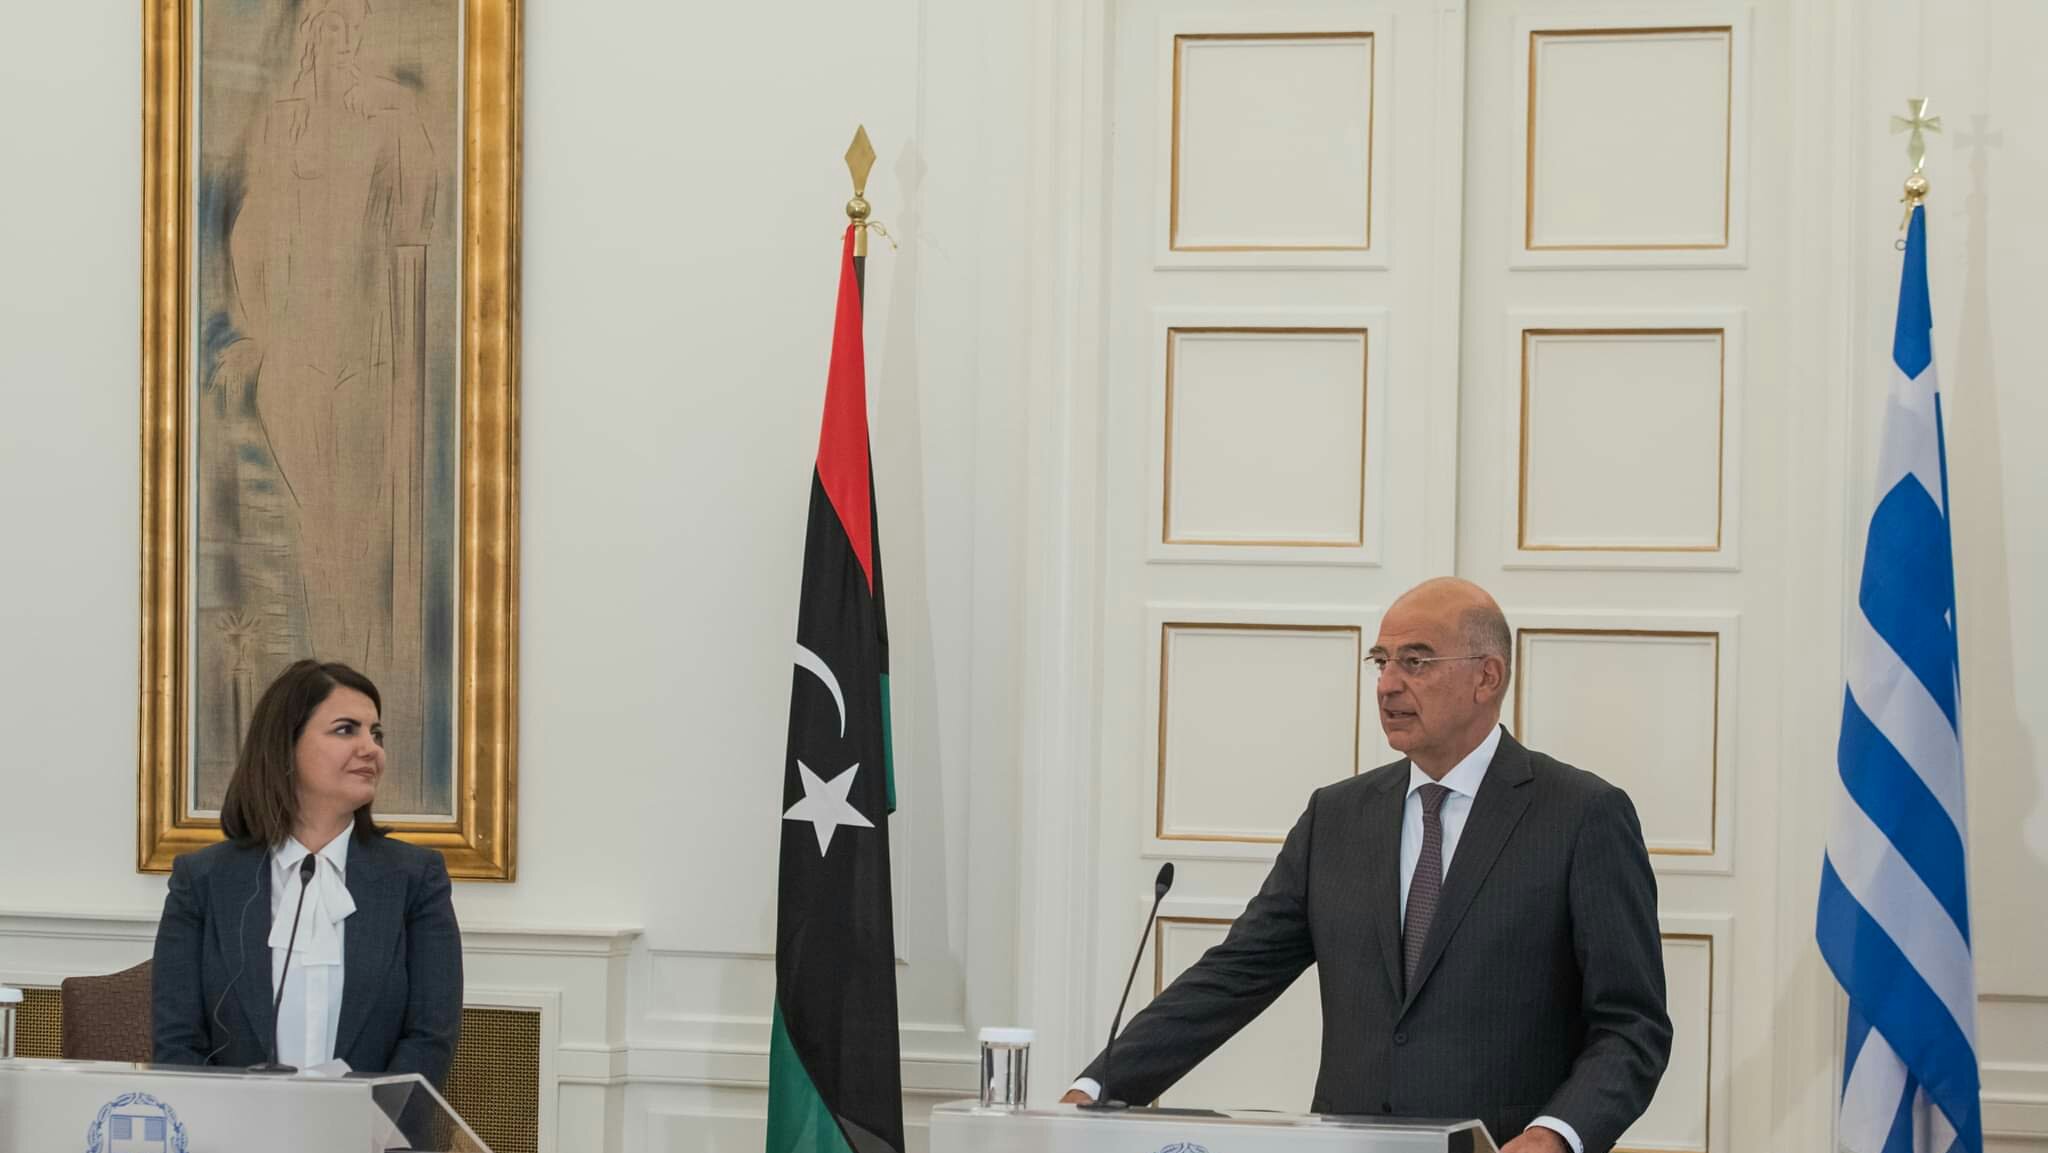 Ν. Δένδιας – Να απομακρυνθούν όλα τα ξένα στρατεύματα από τη Λιβύη και να διενεργηθούν αδιάβλητες εκλογές